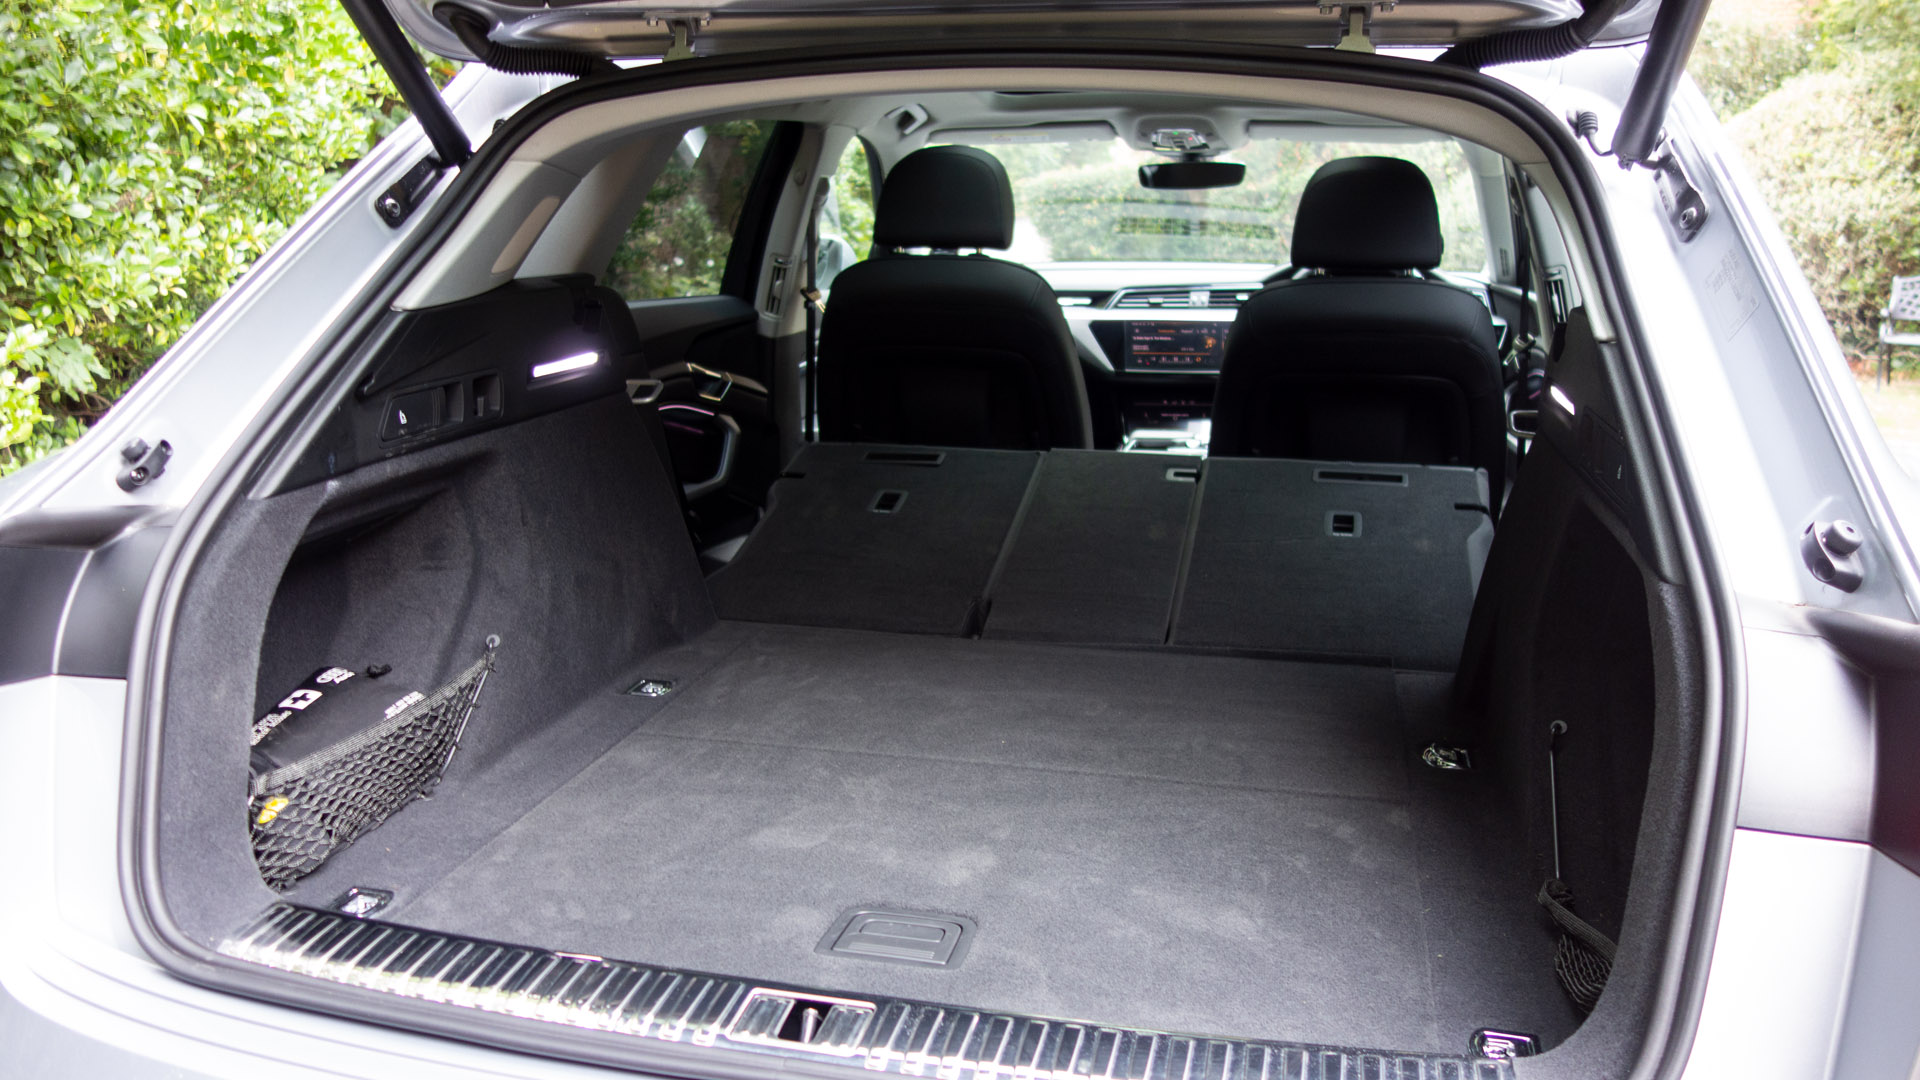 Audi e-tron seats down rear